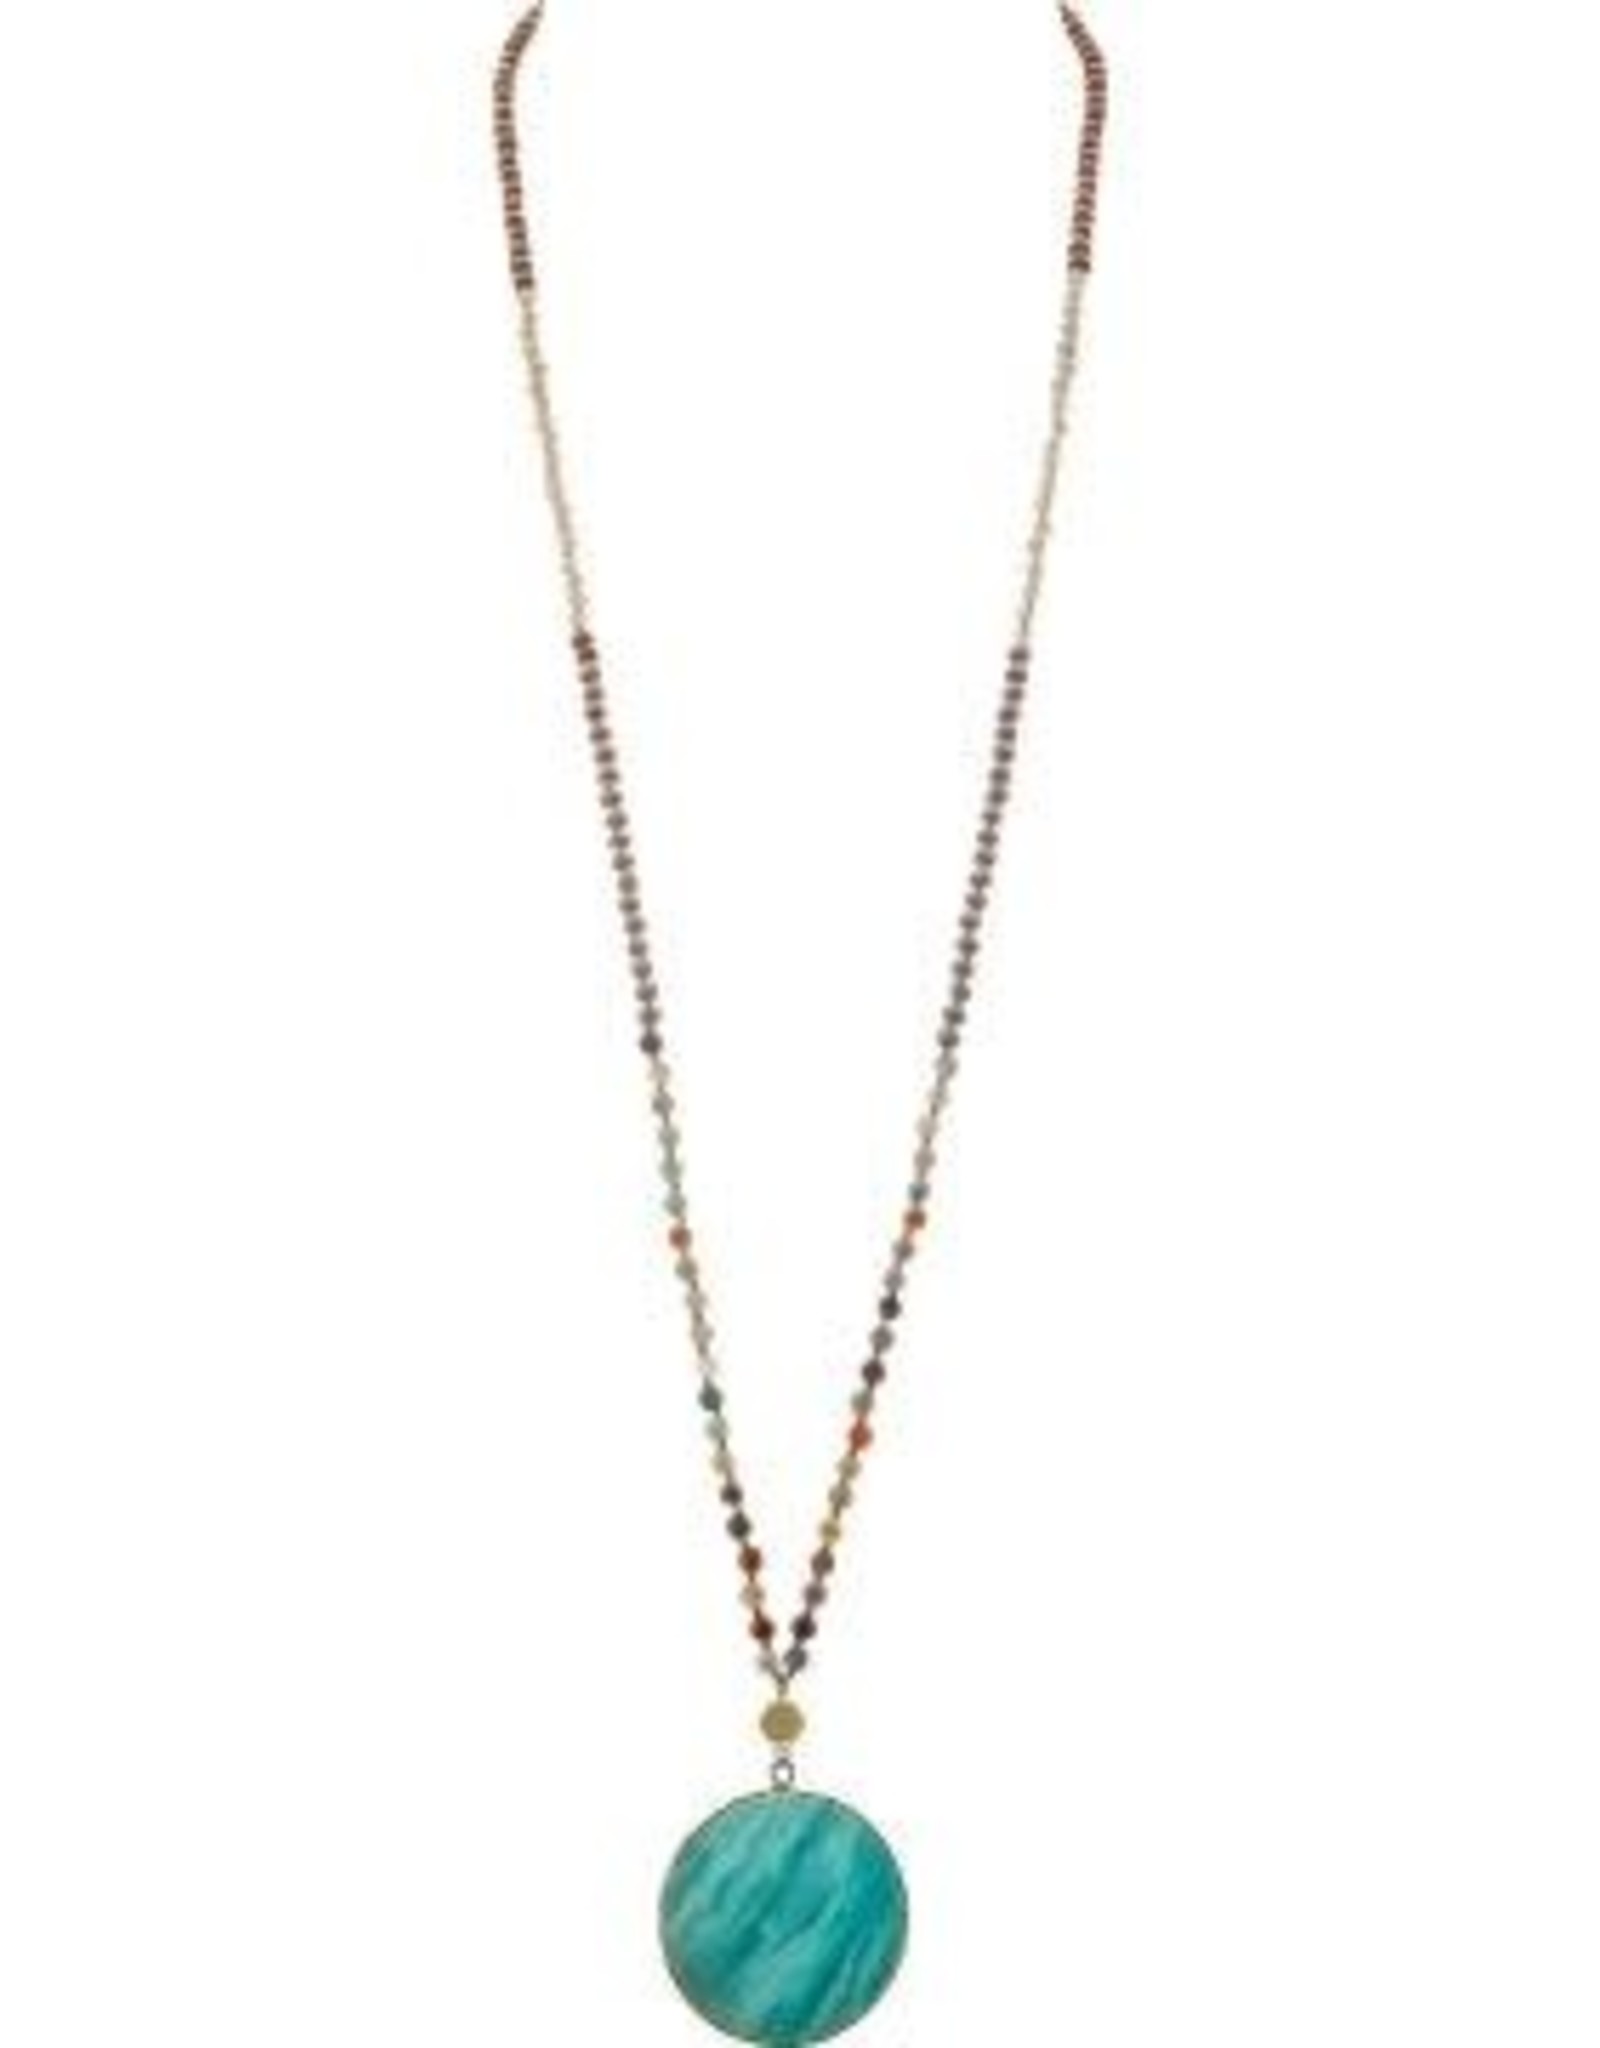 Green Rutile Necklace – Eaarthbones Jewelry